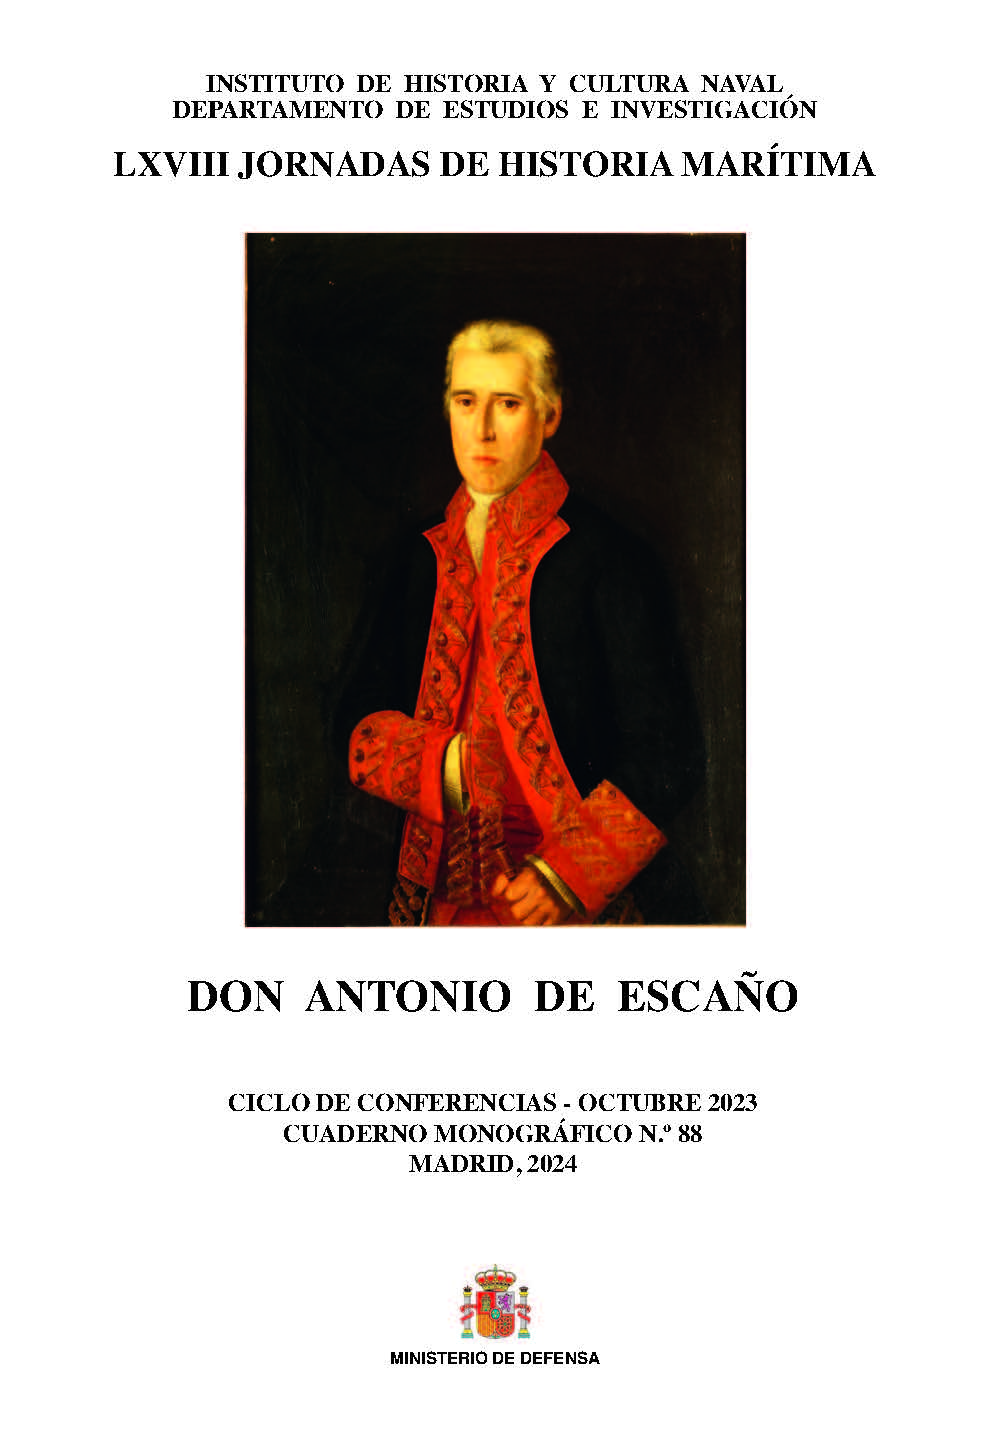 DON ANTONIO DE ESCAÑO